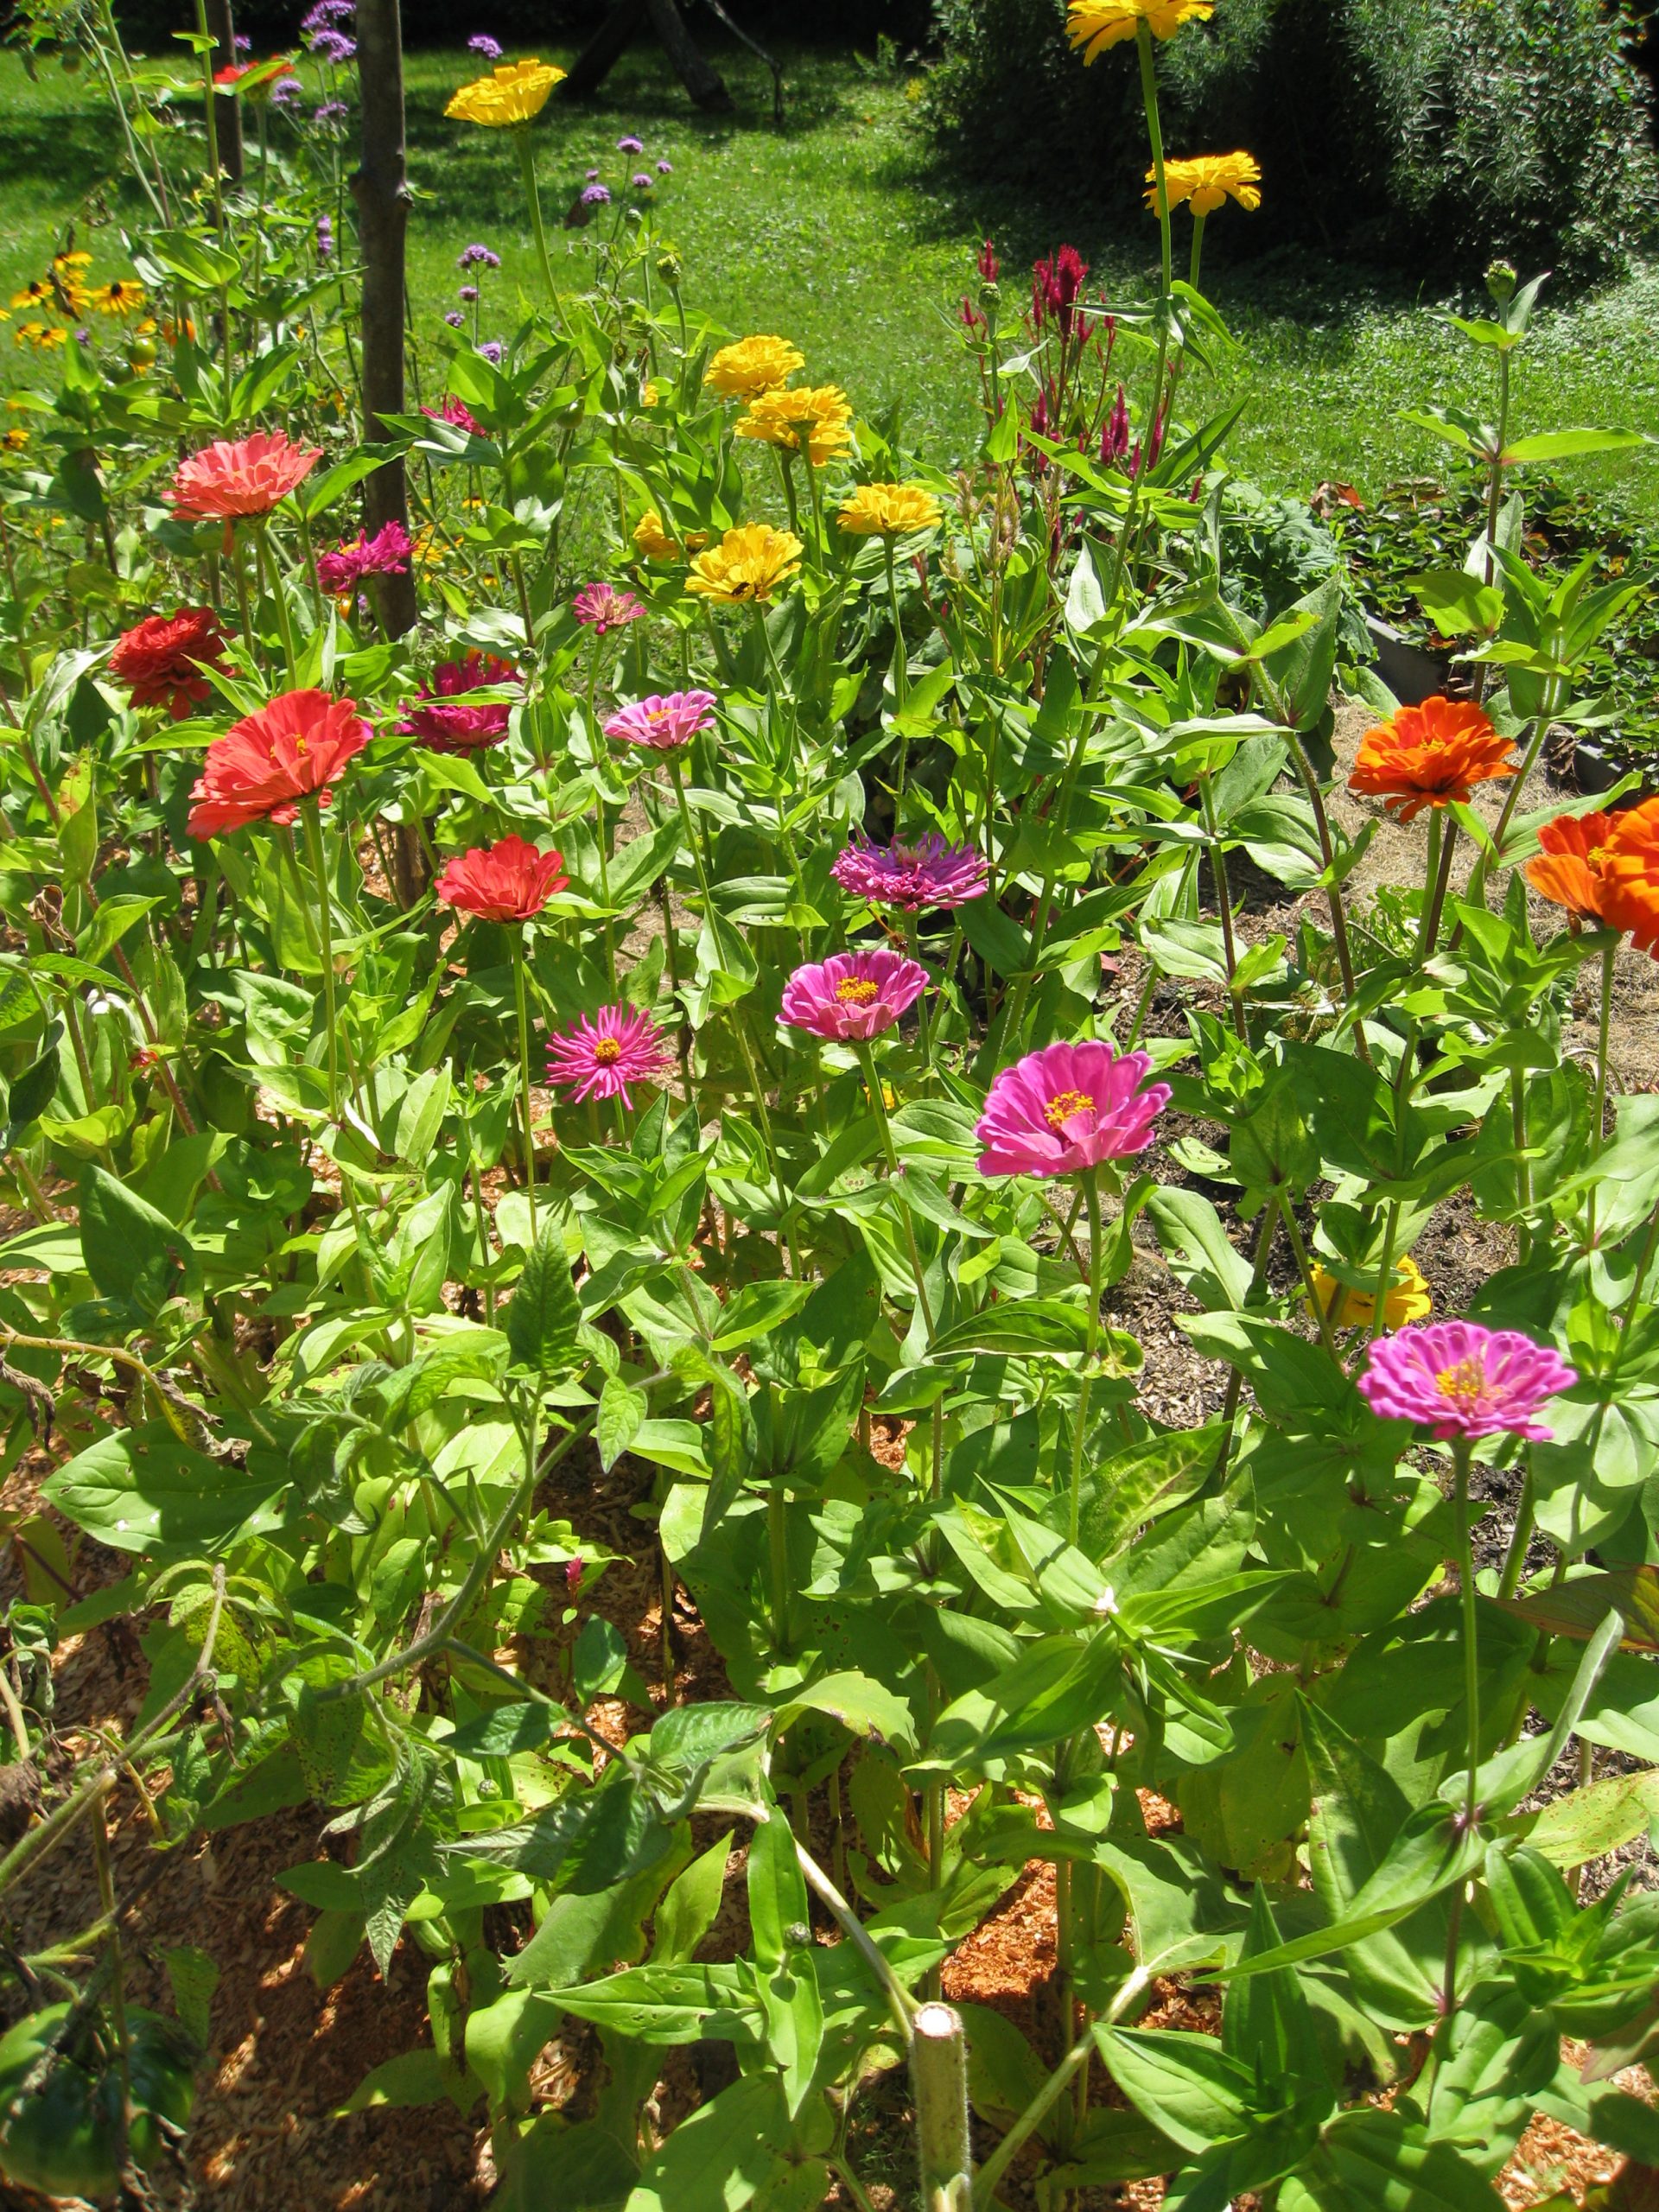 Zinnias in a cut flower garden